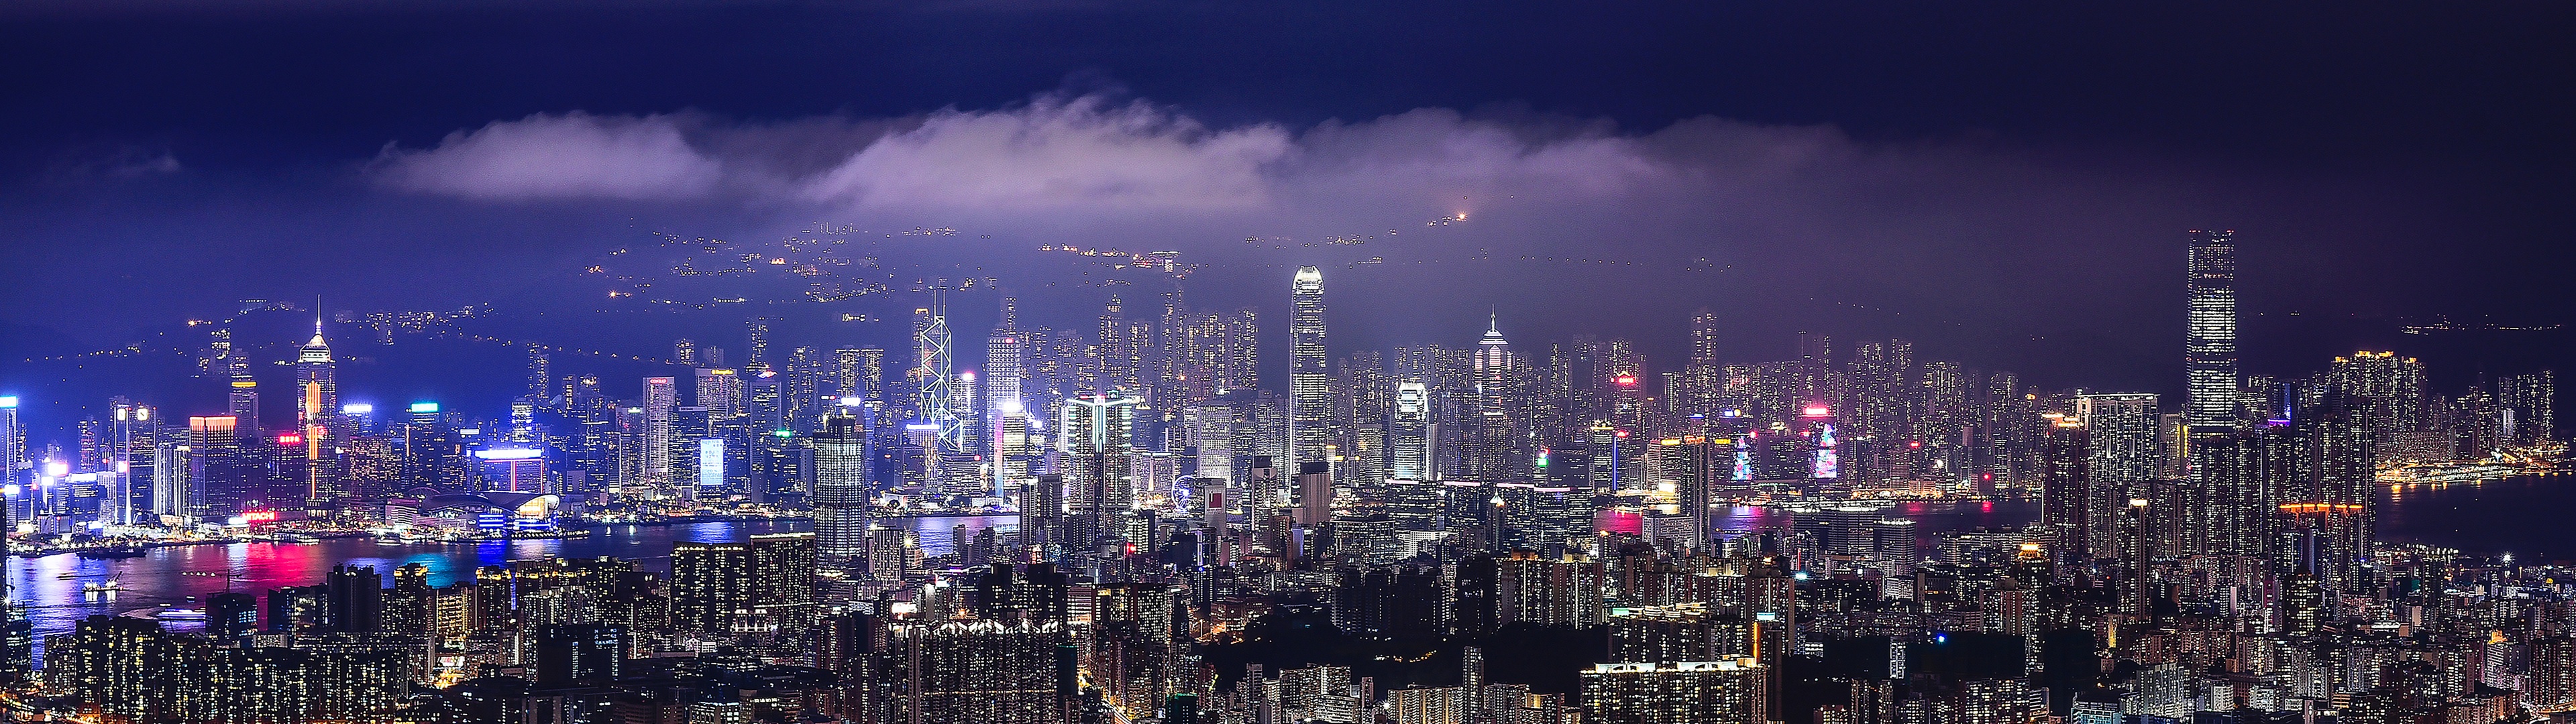 Hình nền phố đêm Hong Kong: Chạm vào sự hoàng tráng và lãng mạn với hình nền phố đêm Hong Kong lung linh. Địa điểm này chắc chắn sẽ làm bạn ngây ngất với các ánh đèn neon đầy màu sắc và sự sống động của con phố.